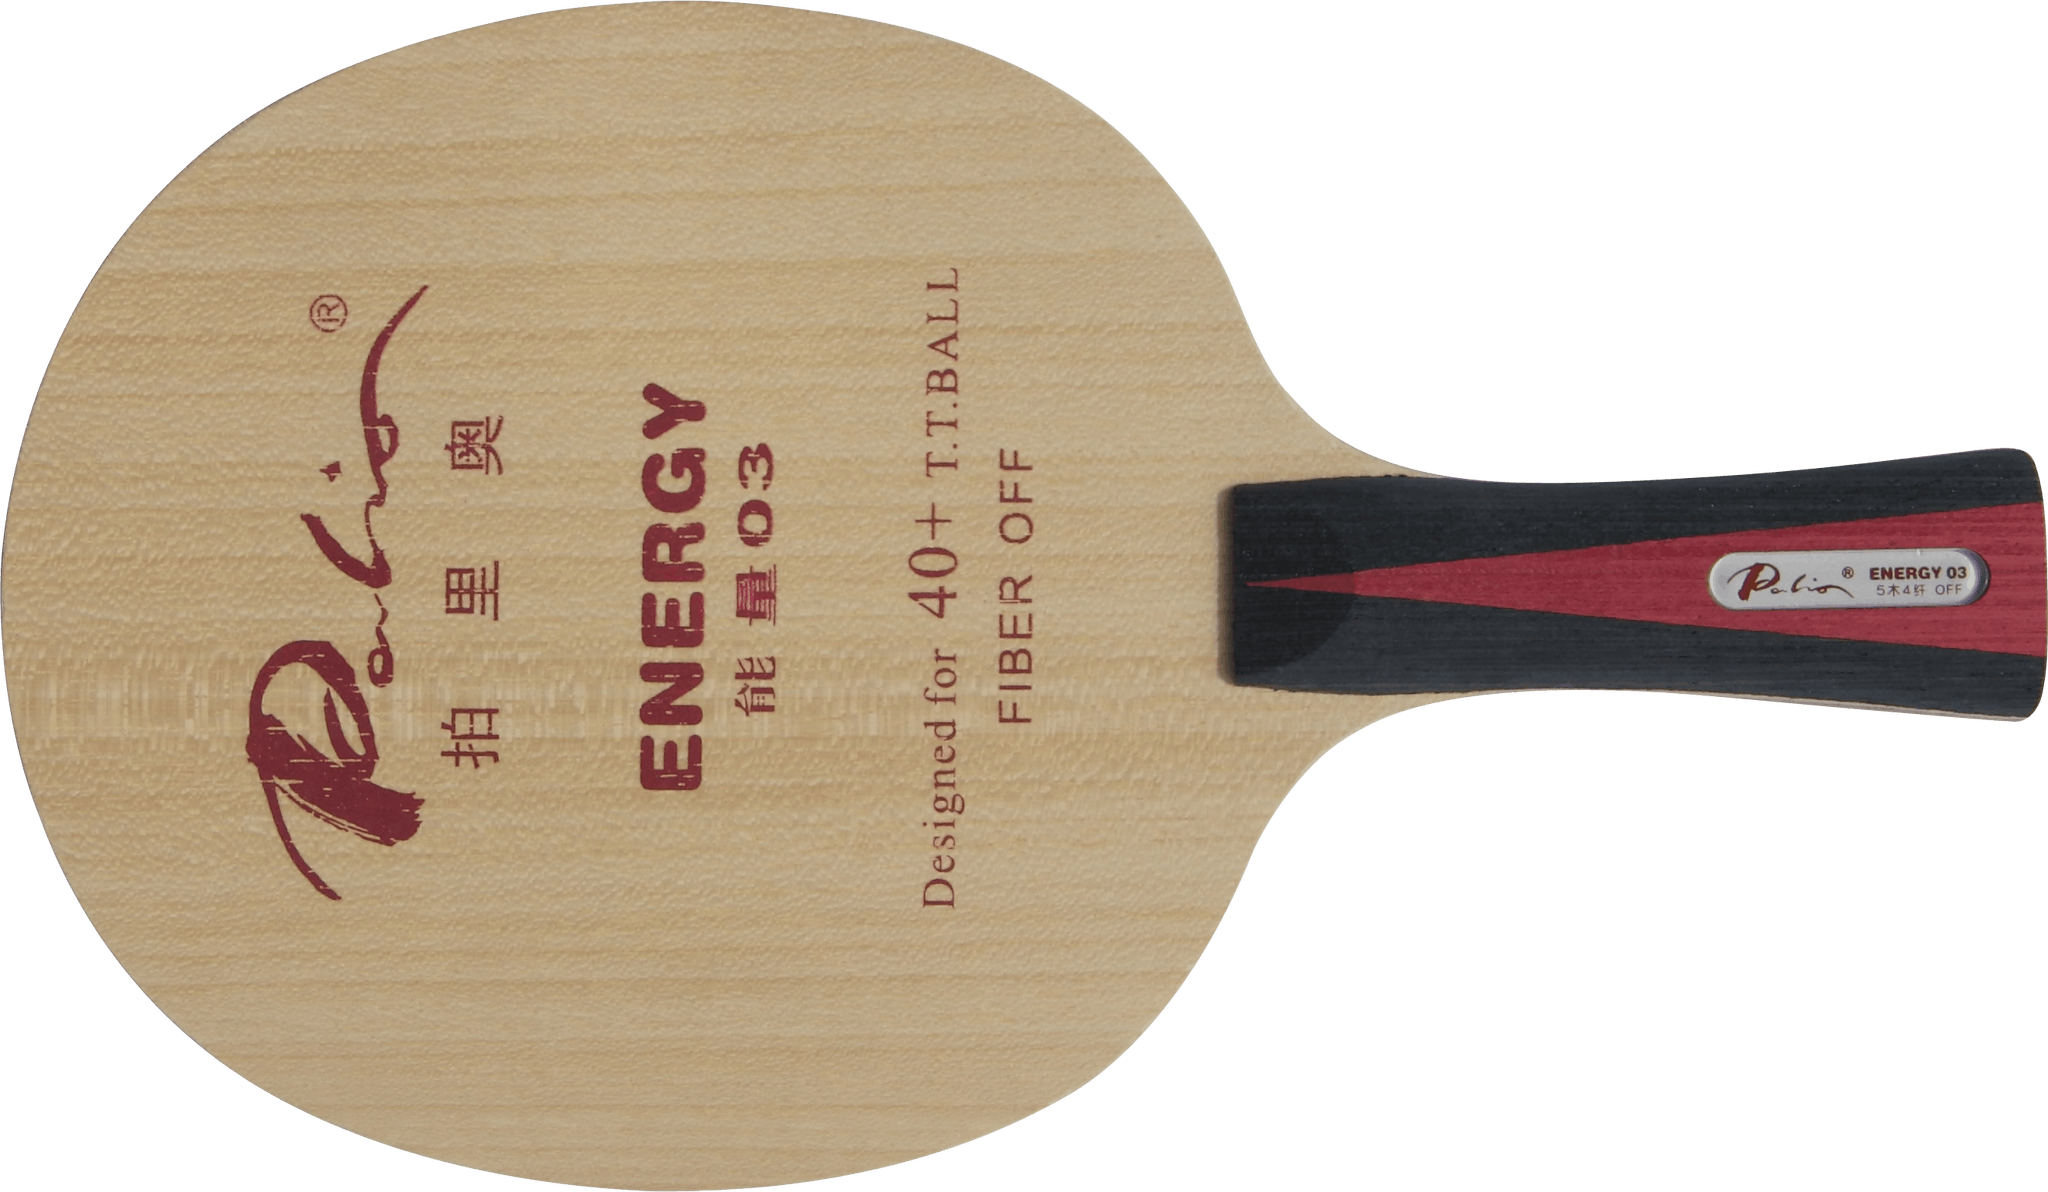 Palio - Energy 03